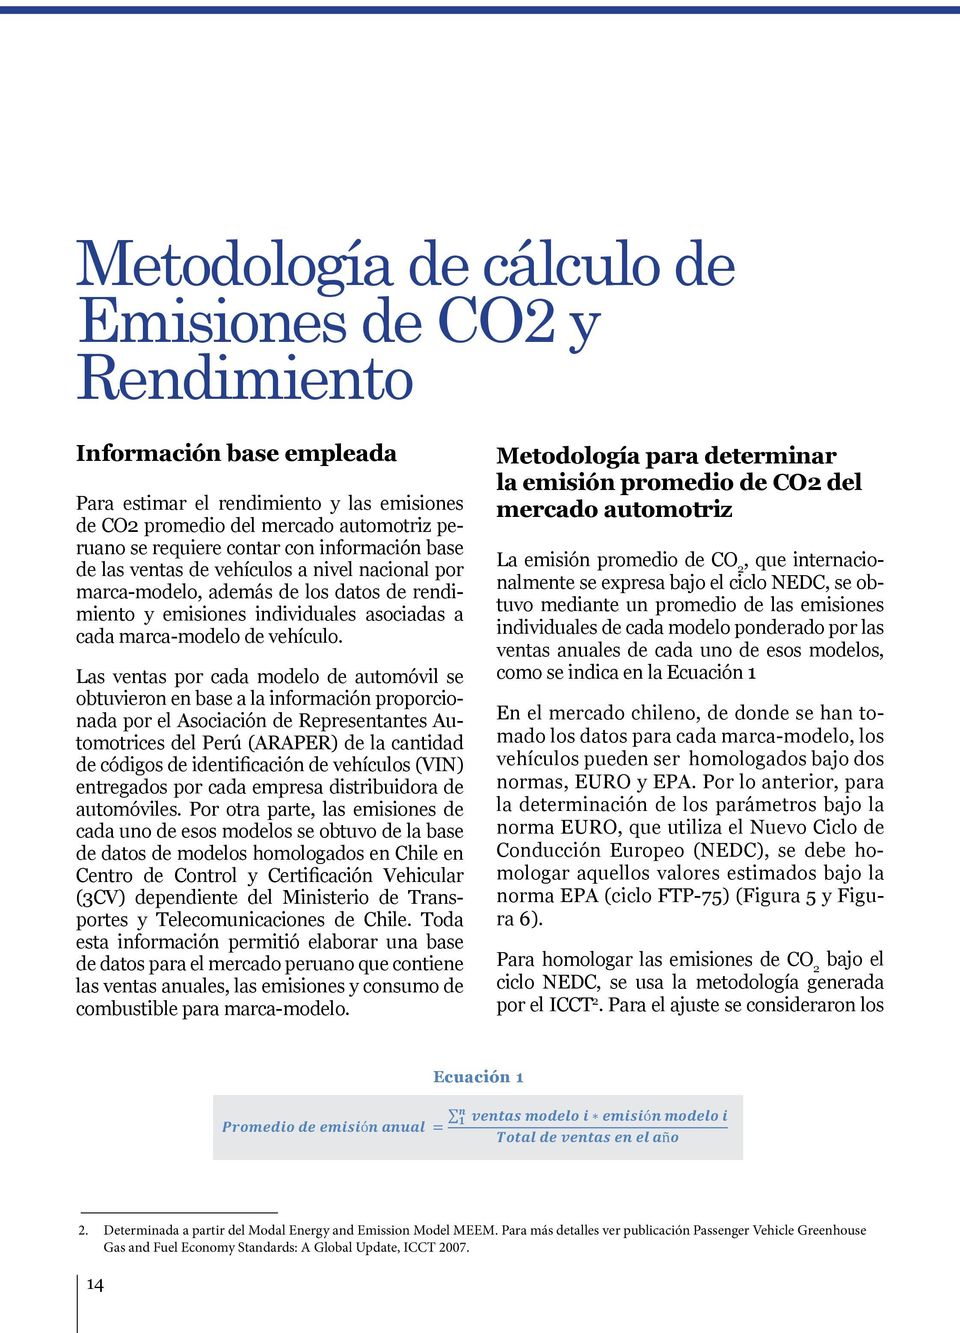 Metodología para determinar la emisión promedio de CO2 del mercado automotriz La emisión promedio de CO 2, que internacionalmente se expresa bajo el ciclo NEDC, se obtuvo mediante un promedio de las